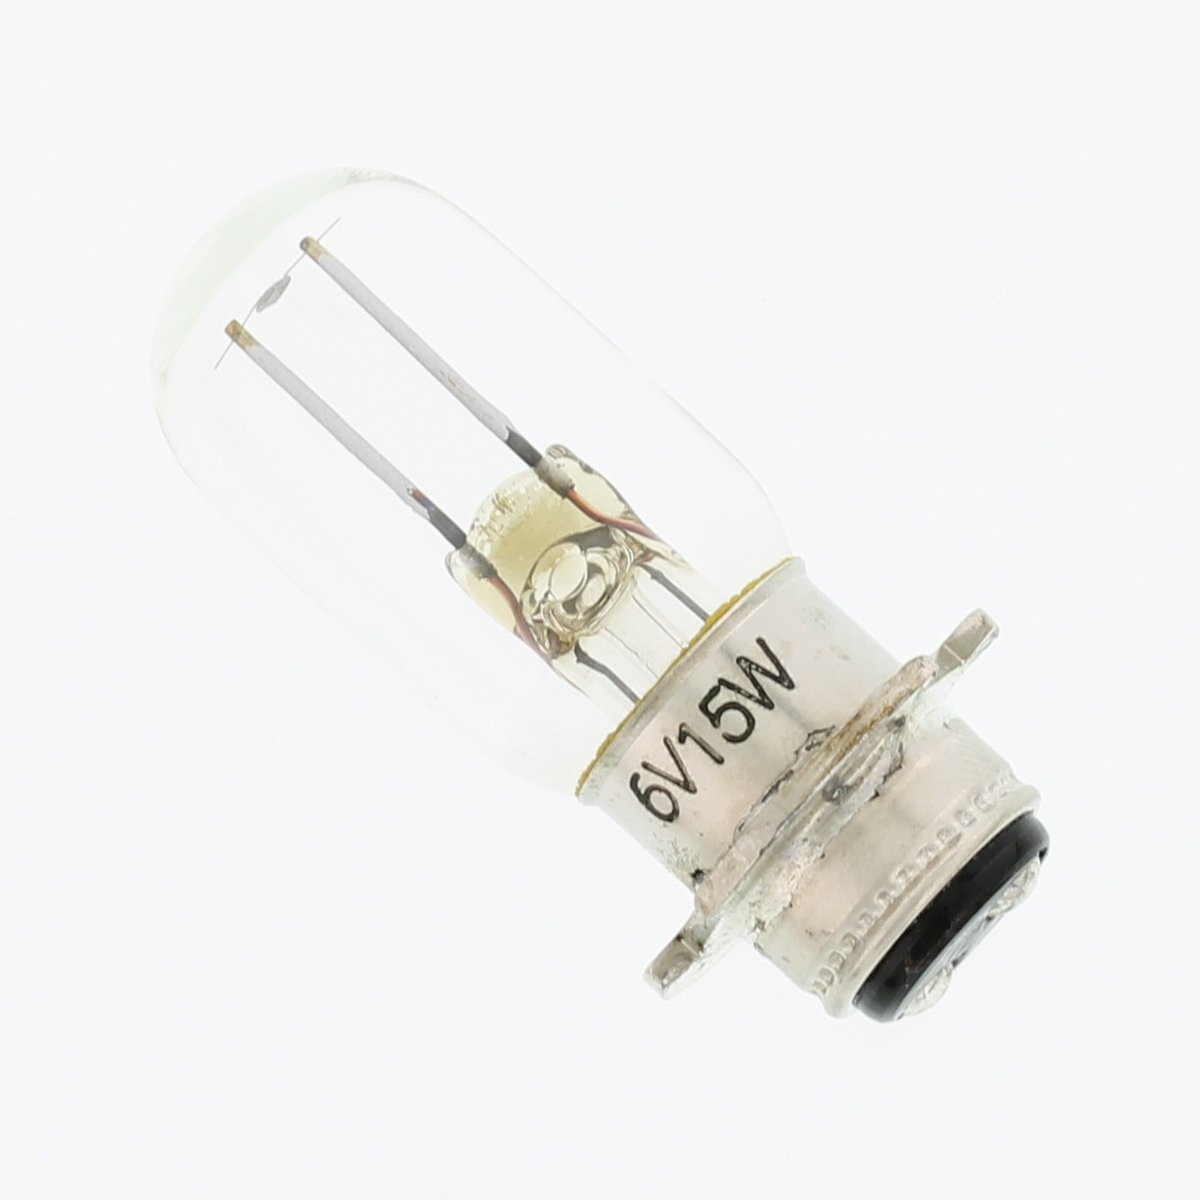 77Z Prefocus Flange Double Contact Incandescent T6 6V 15W P15D - LampTech